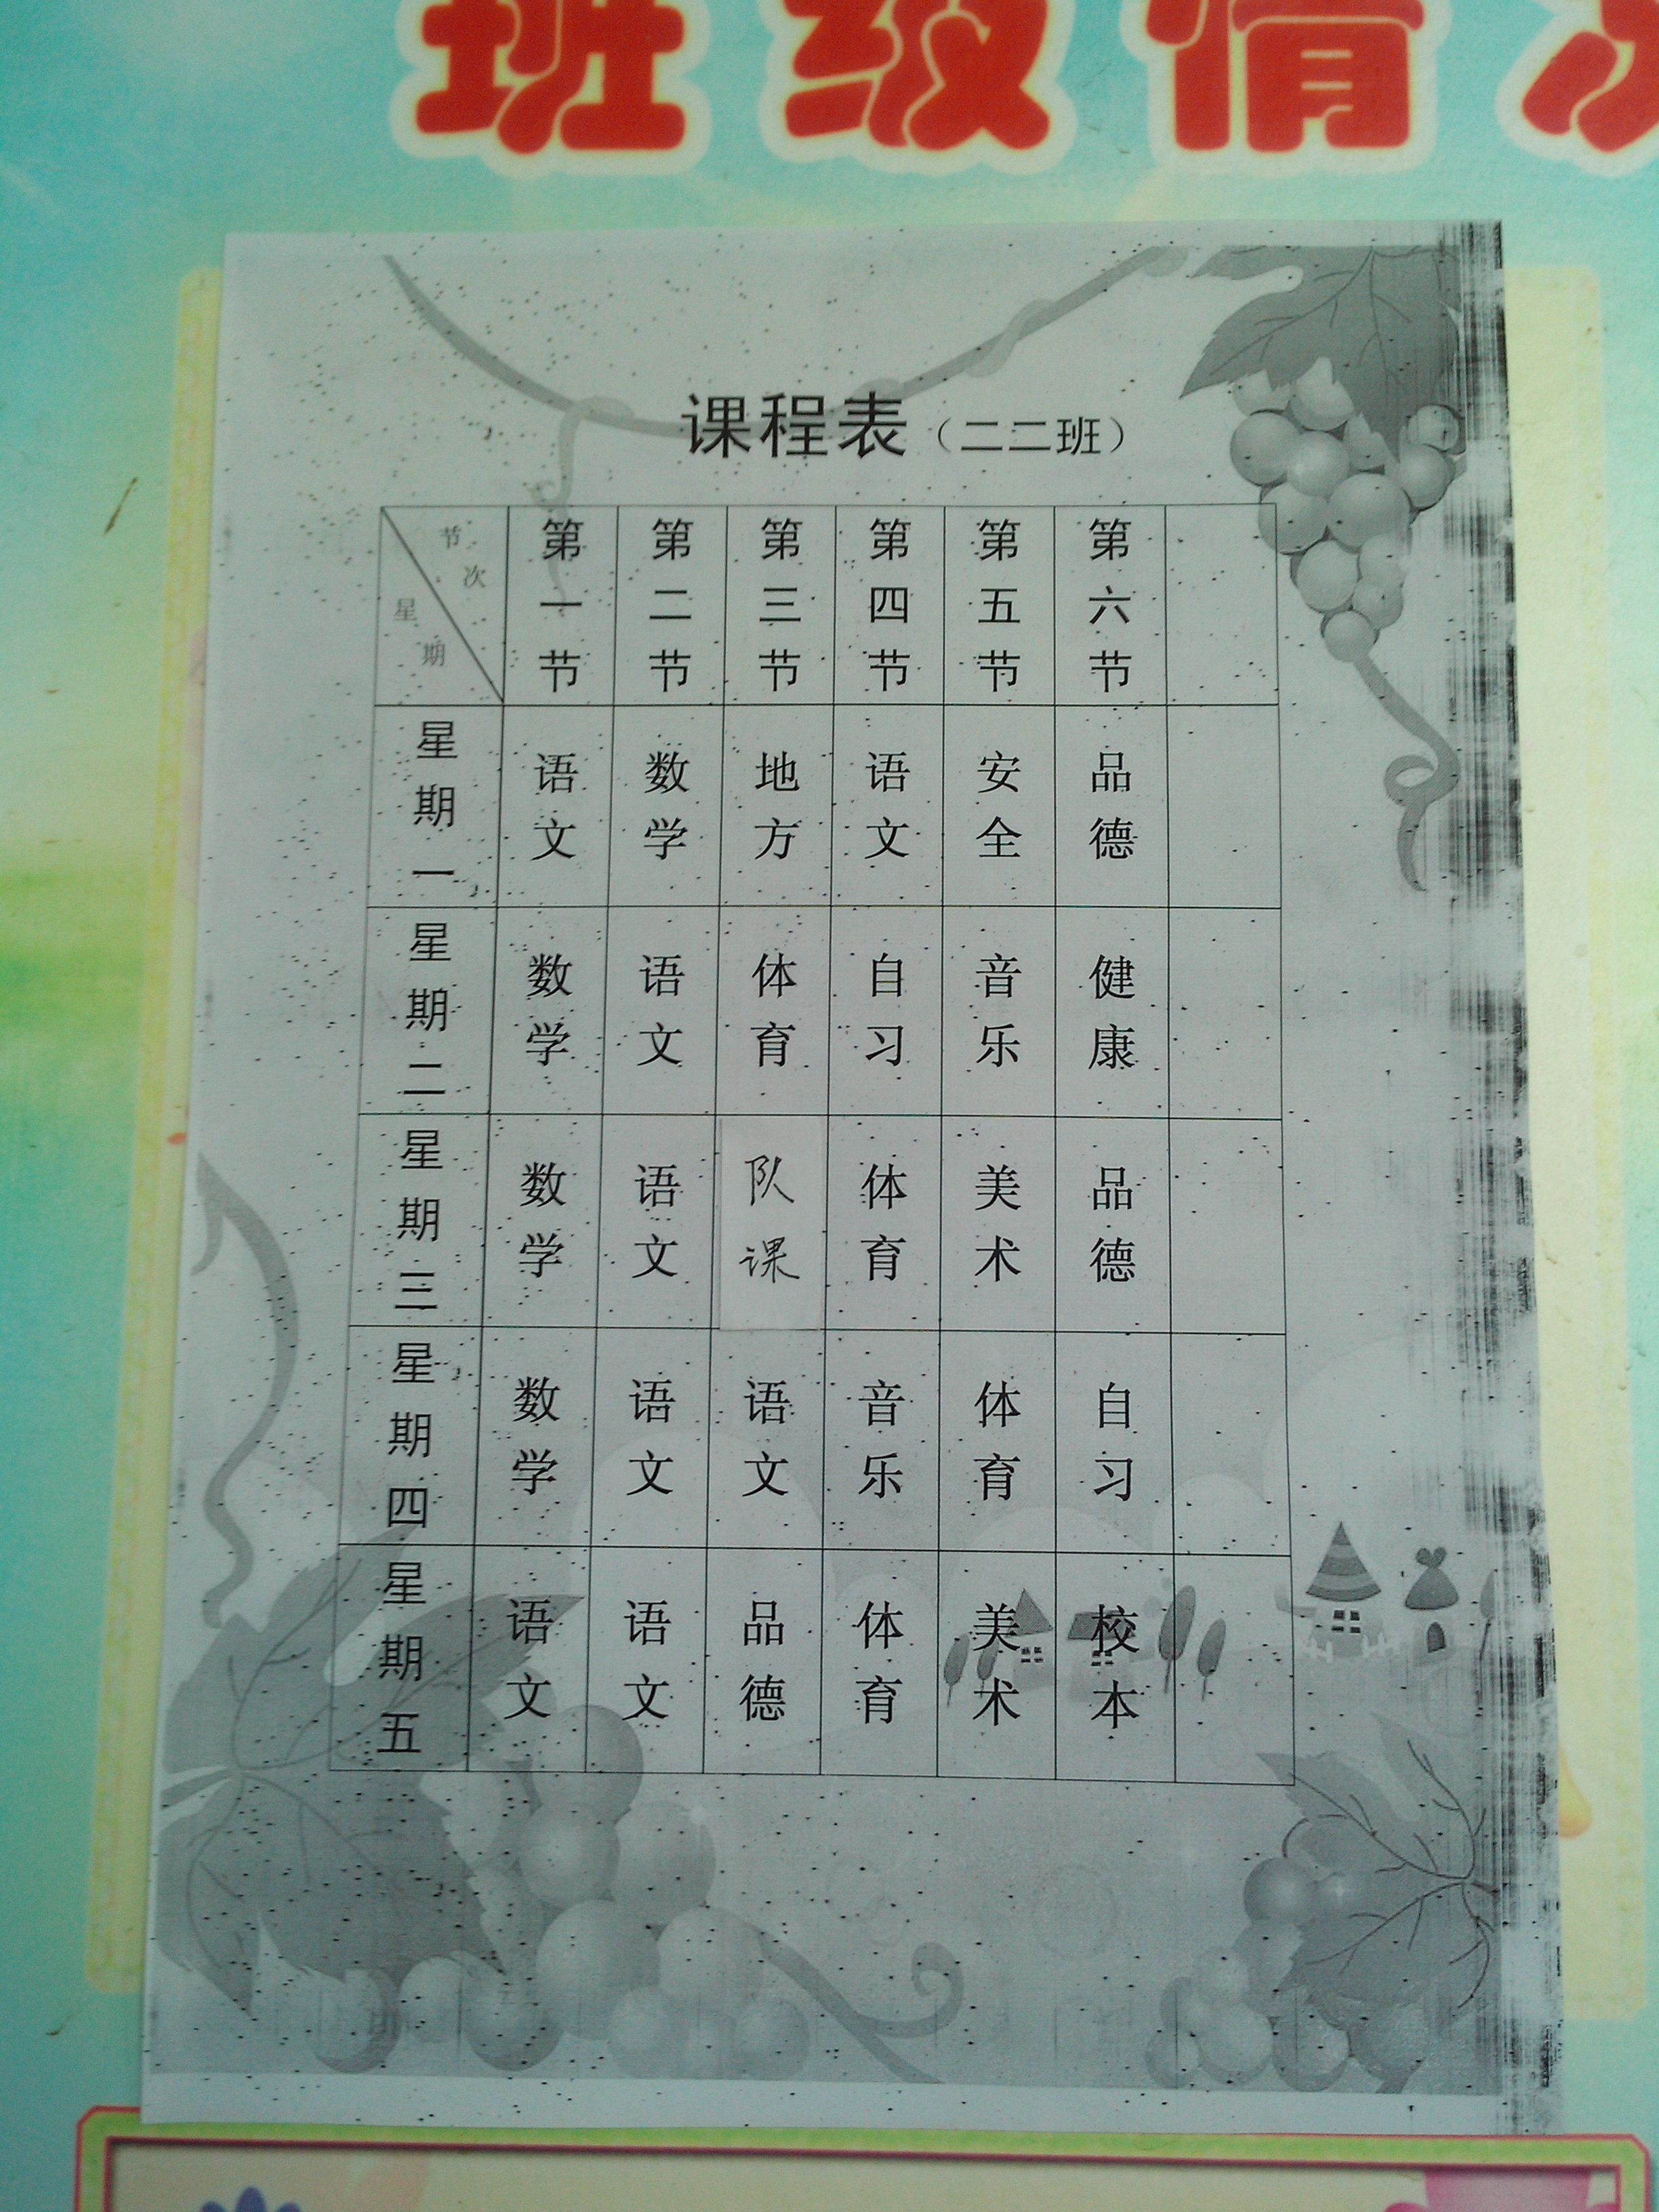 凤凰山小学二年级2班课程表 - 红领巾相约中国